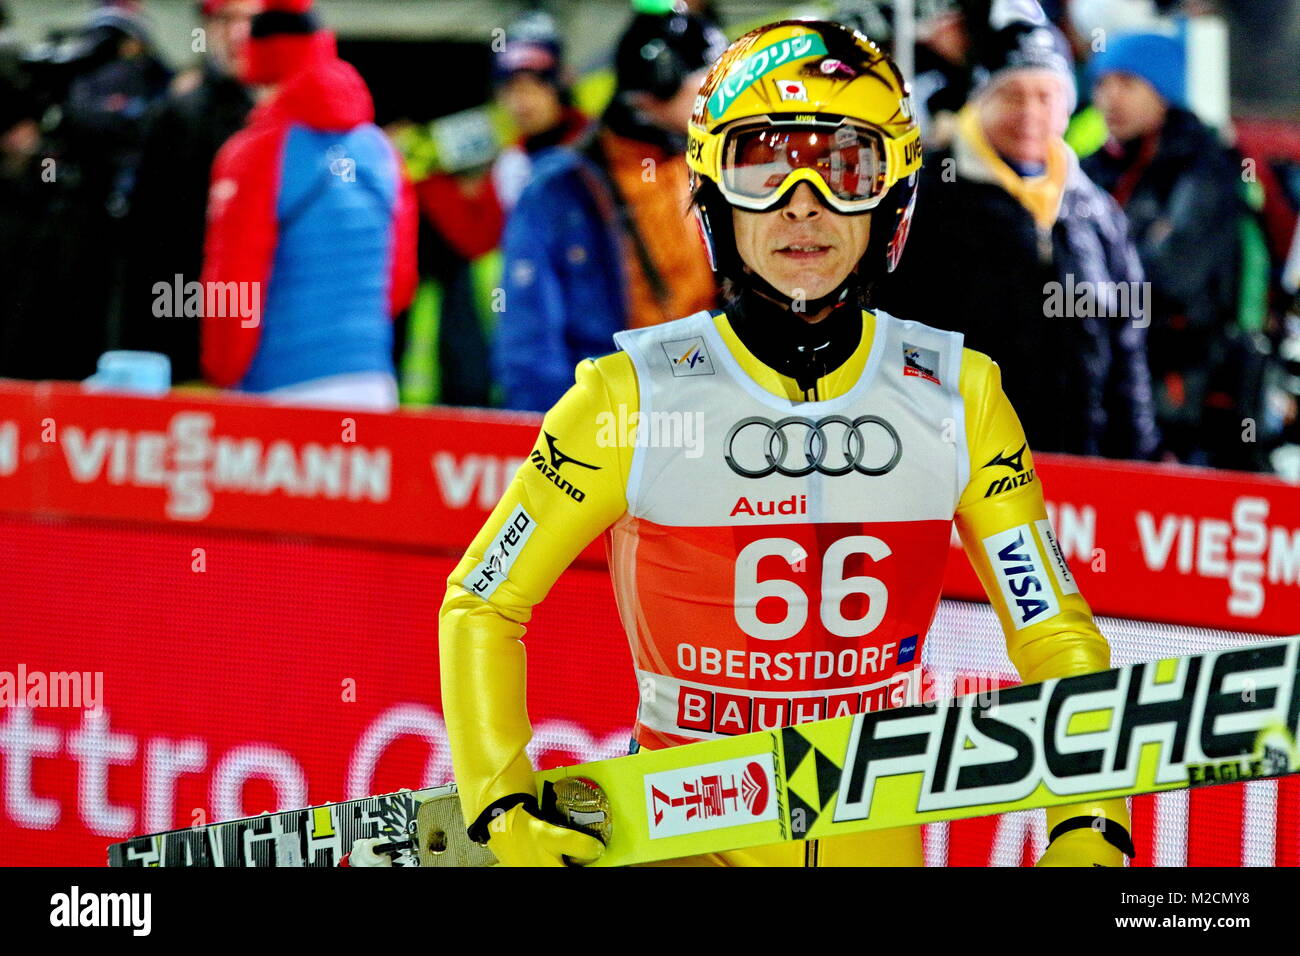 Skispringer Noriaki KASAI (Japan) bei der Qualifikation für 63. Vierschanzentournee Auftaktspringen Oberstdorf Stock Photo